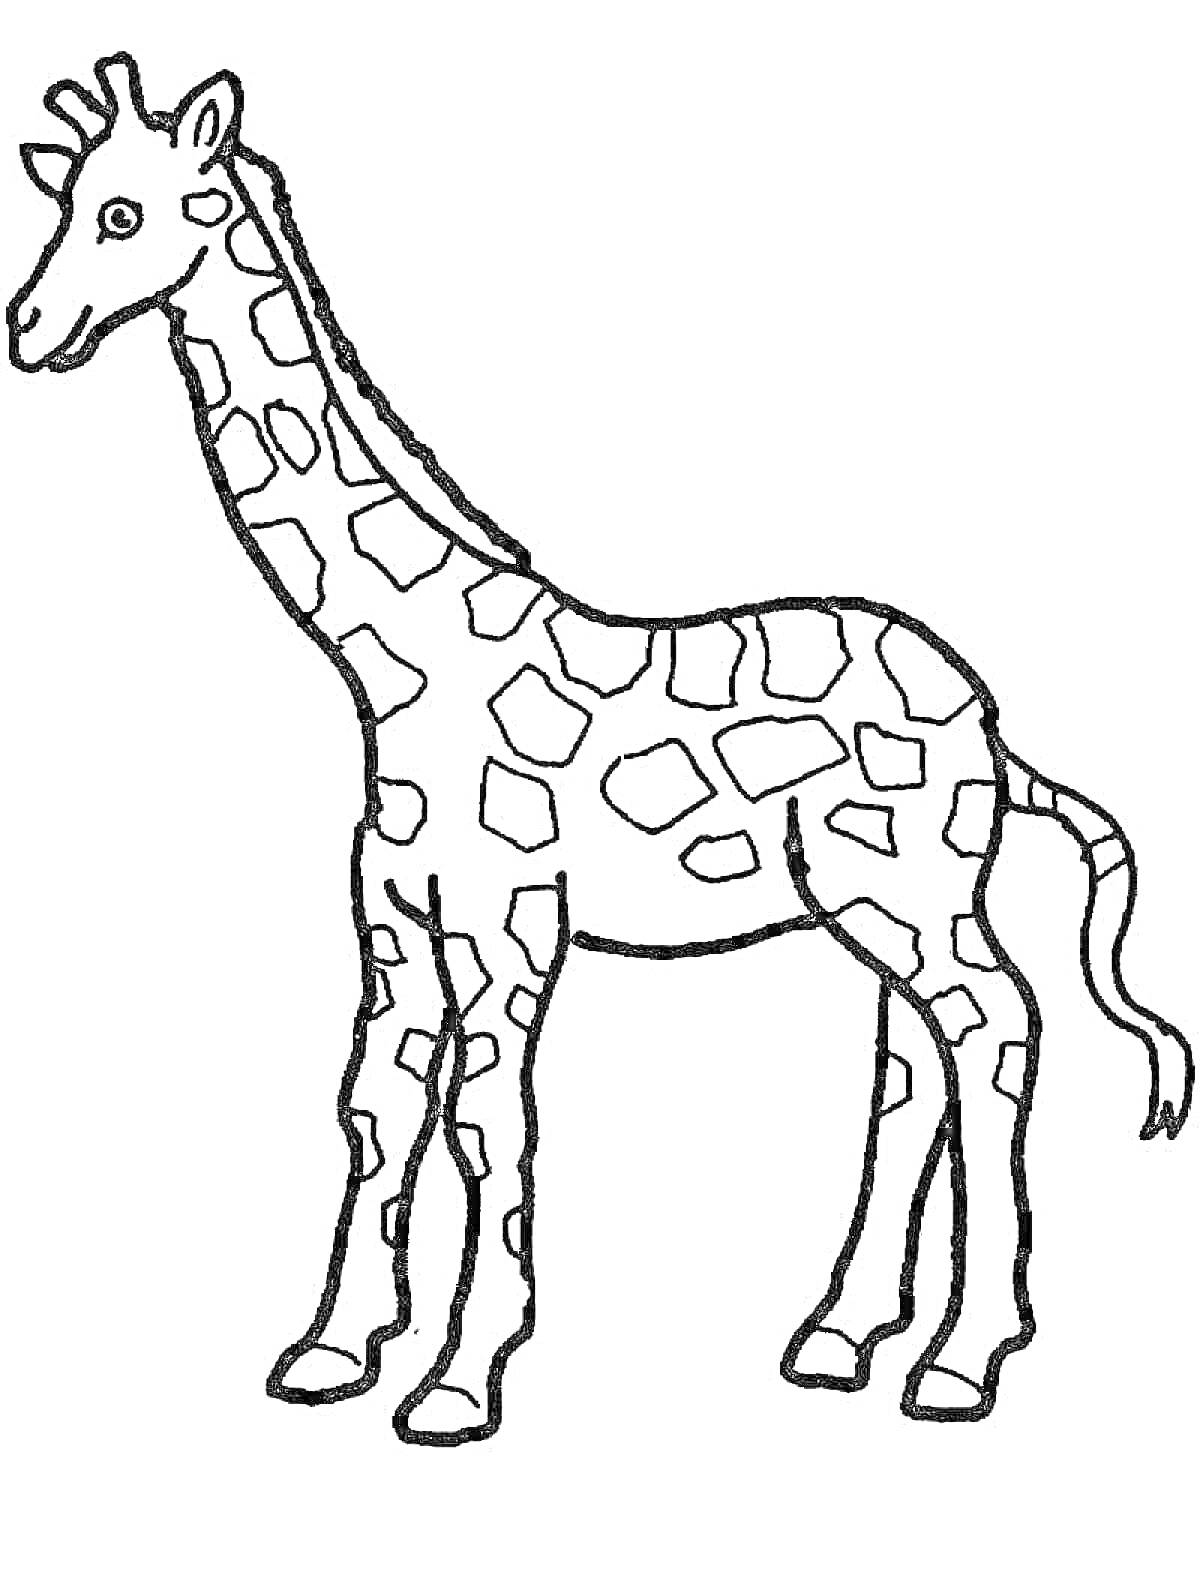 Раскраска Раскраска с изображением жирафа с пятнами на теле и длинной шеей для детей 3-4 лет